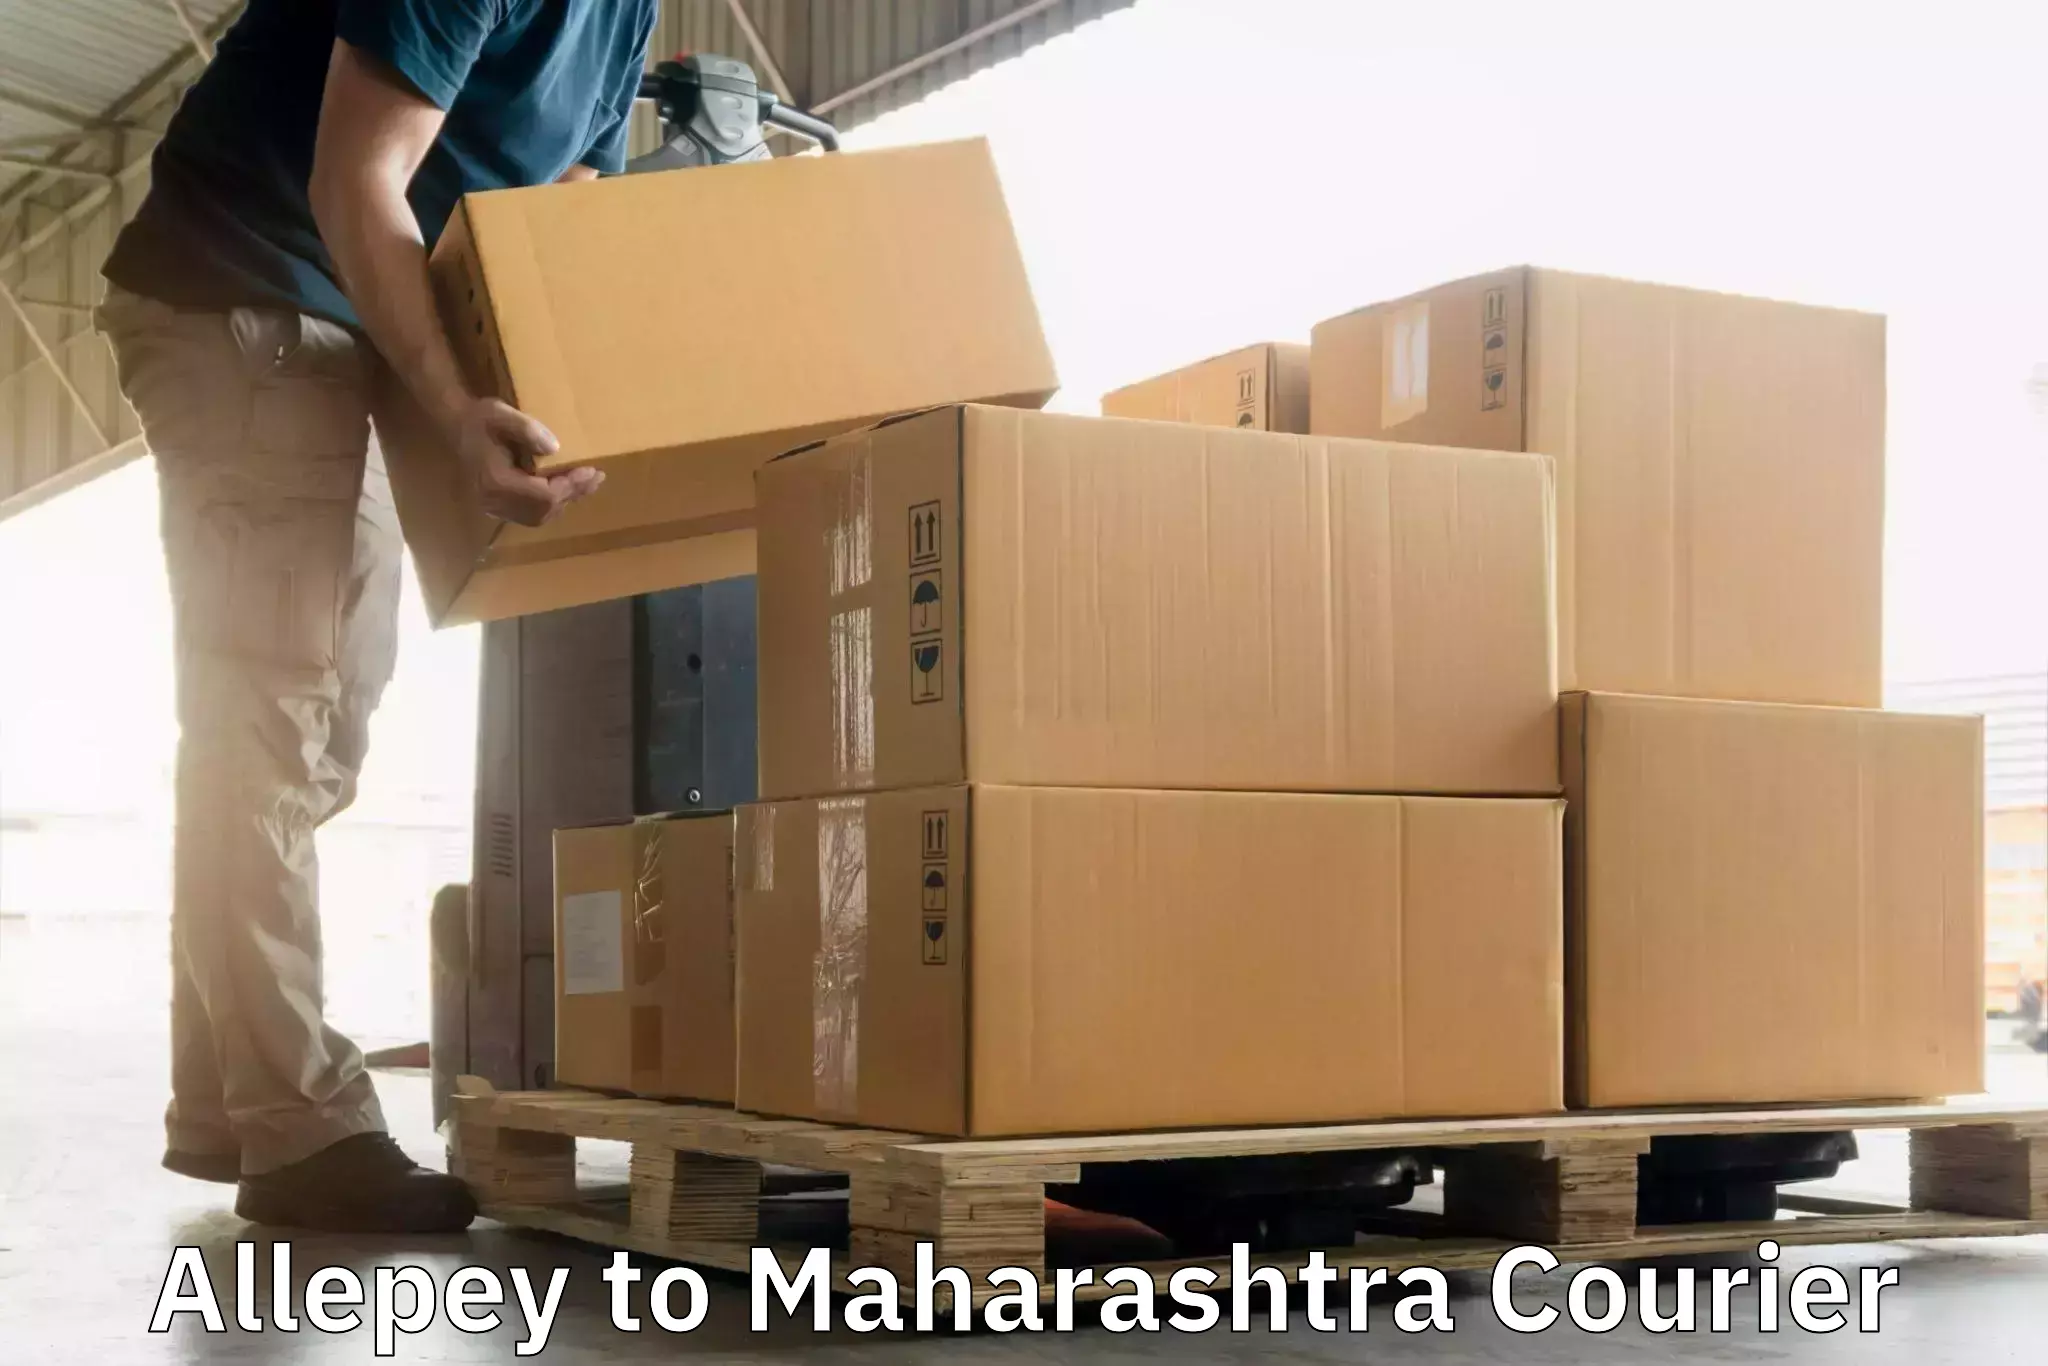 High-capacity shipping options Allepey to Maharashtra